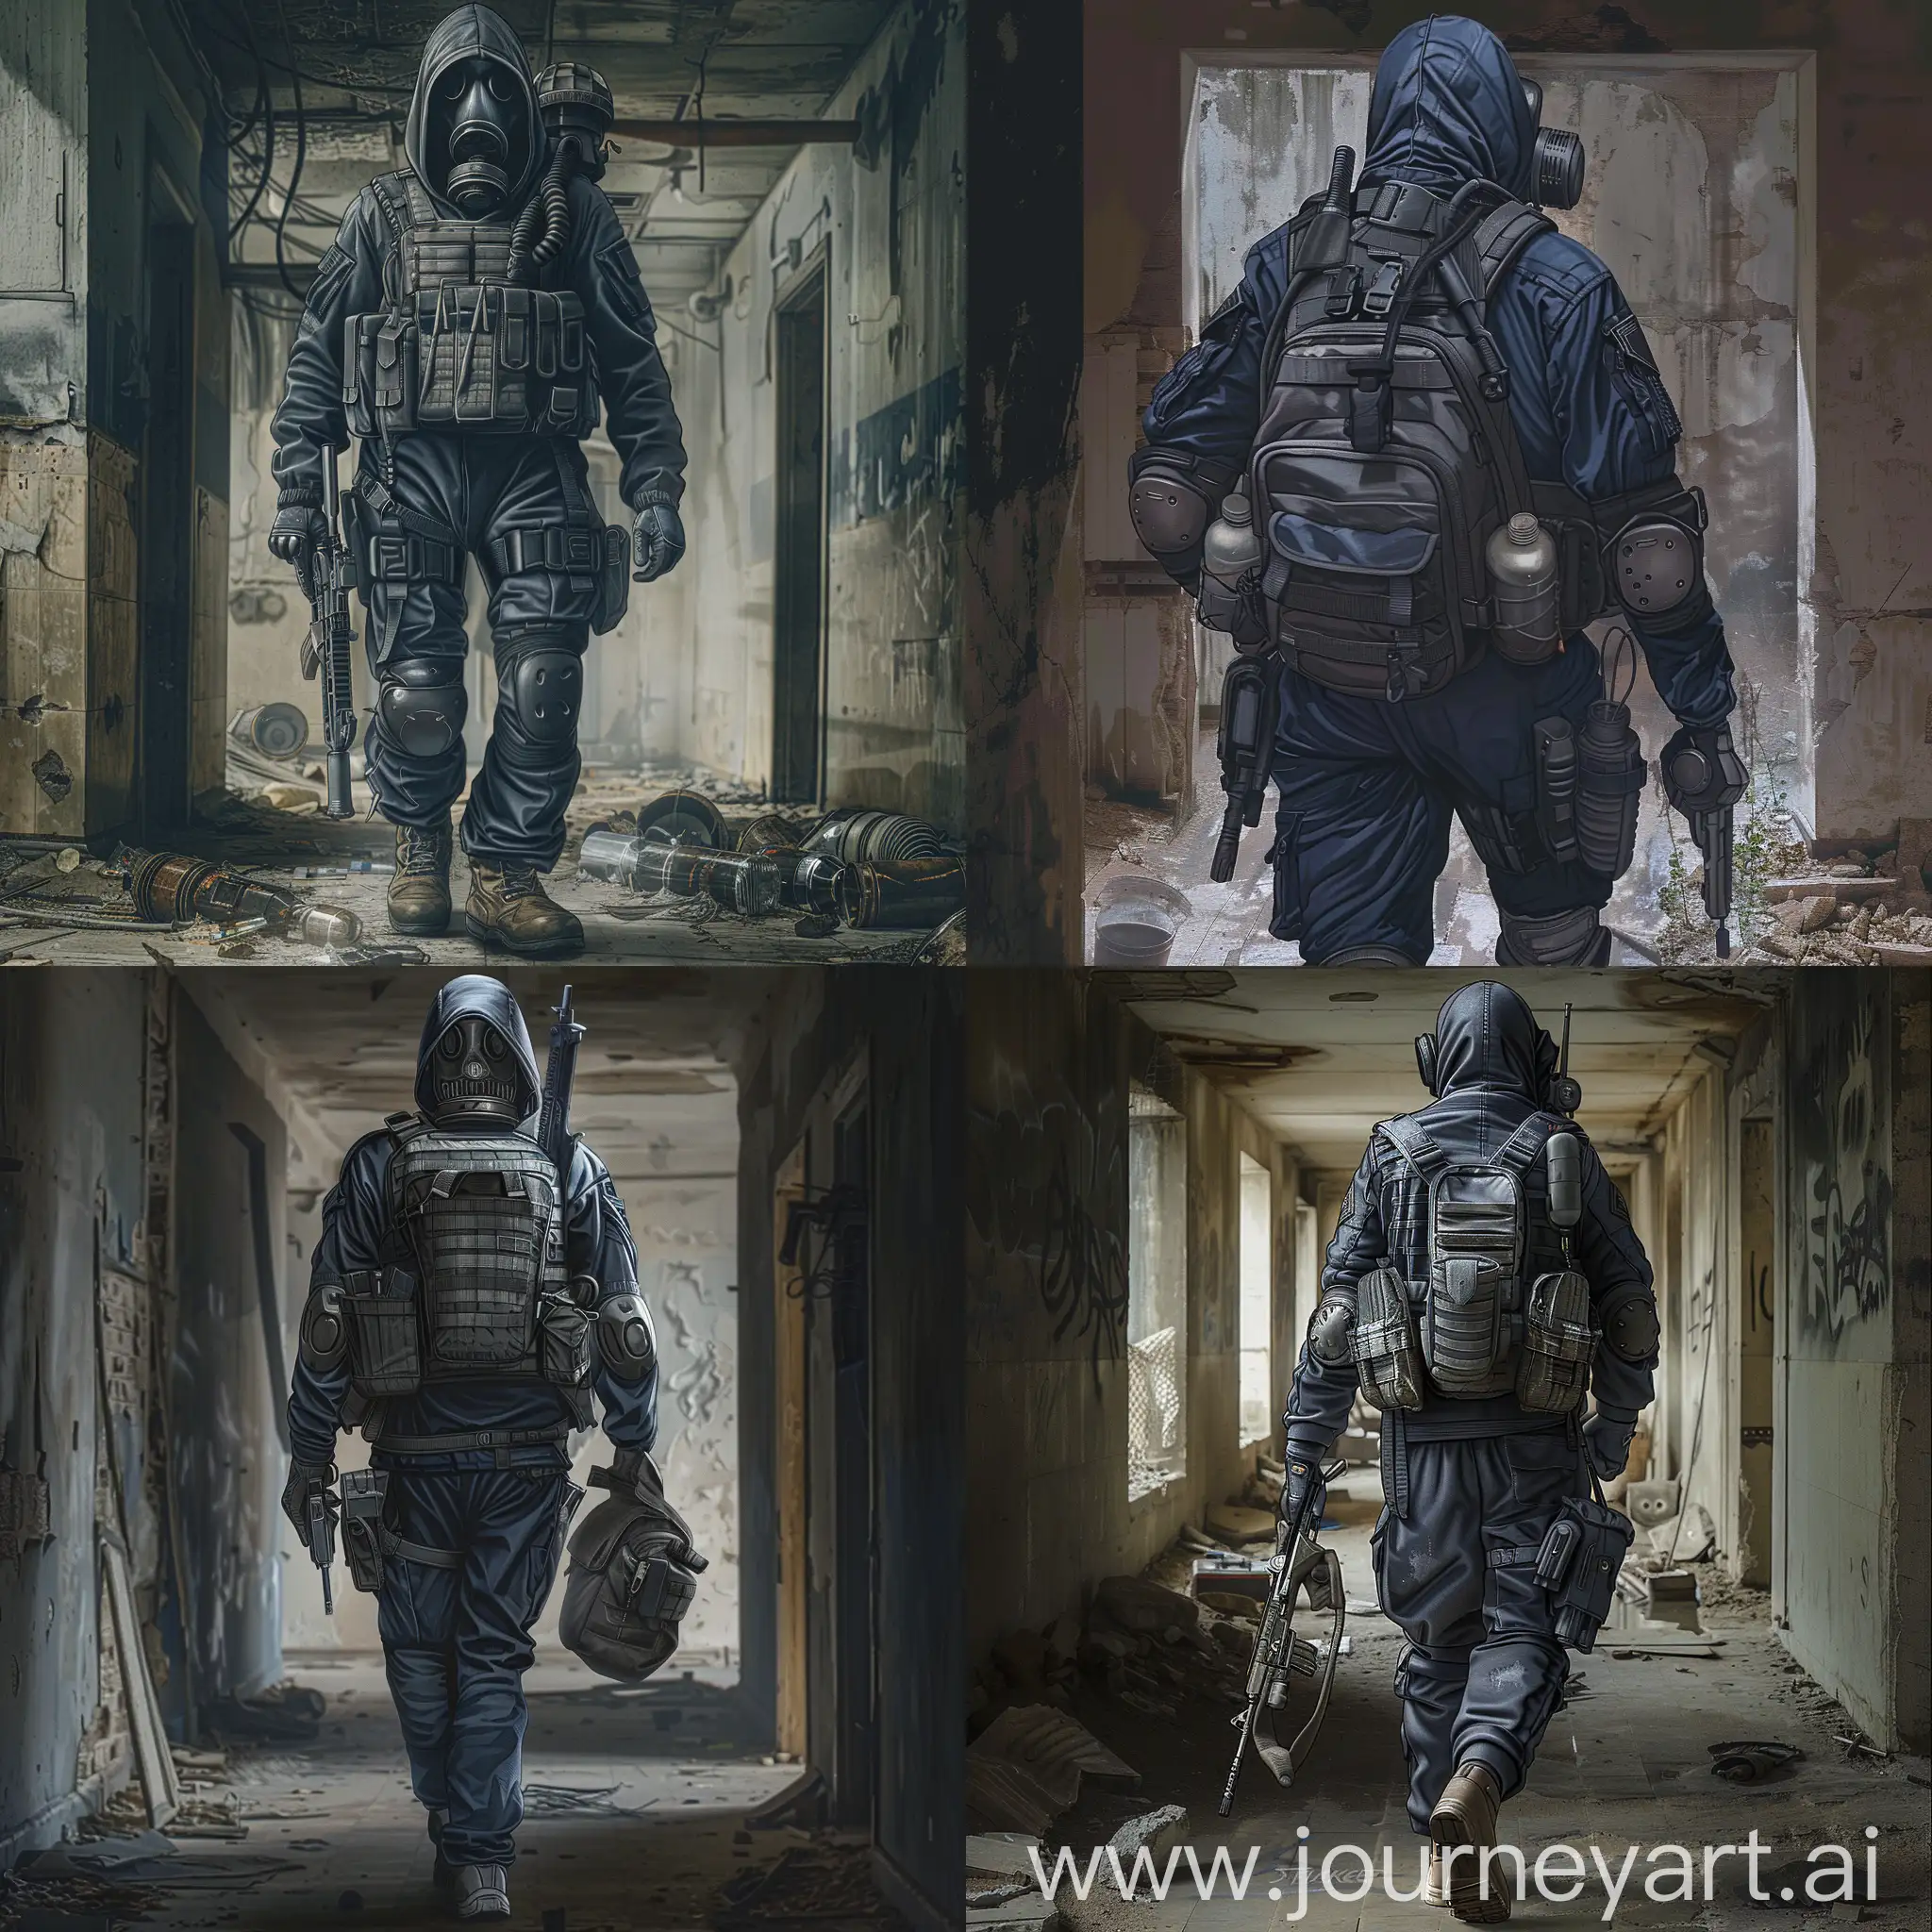 Lone-Mercenary-Explores-Abandoned-Soviet-Bunker-in-Horror-Style